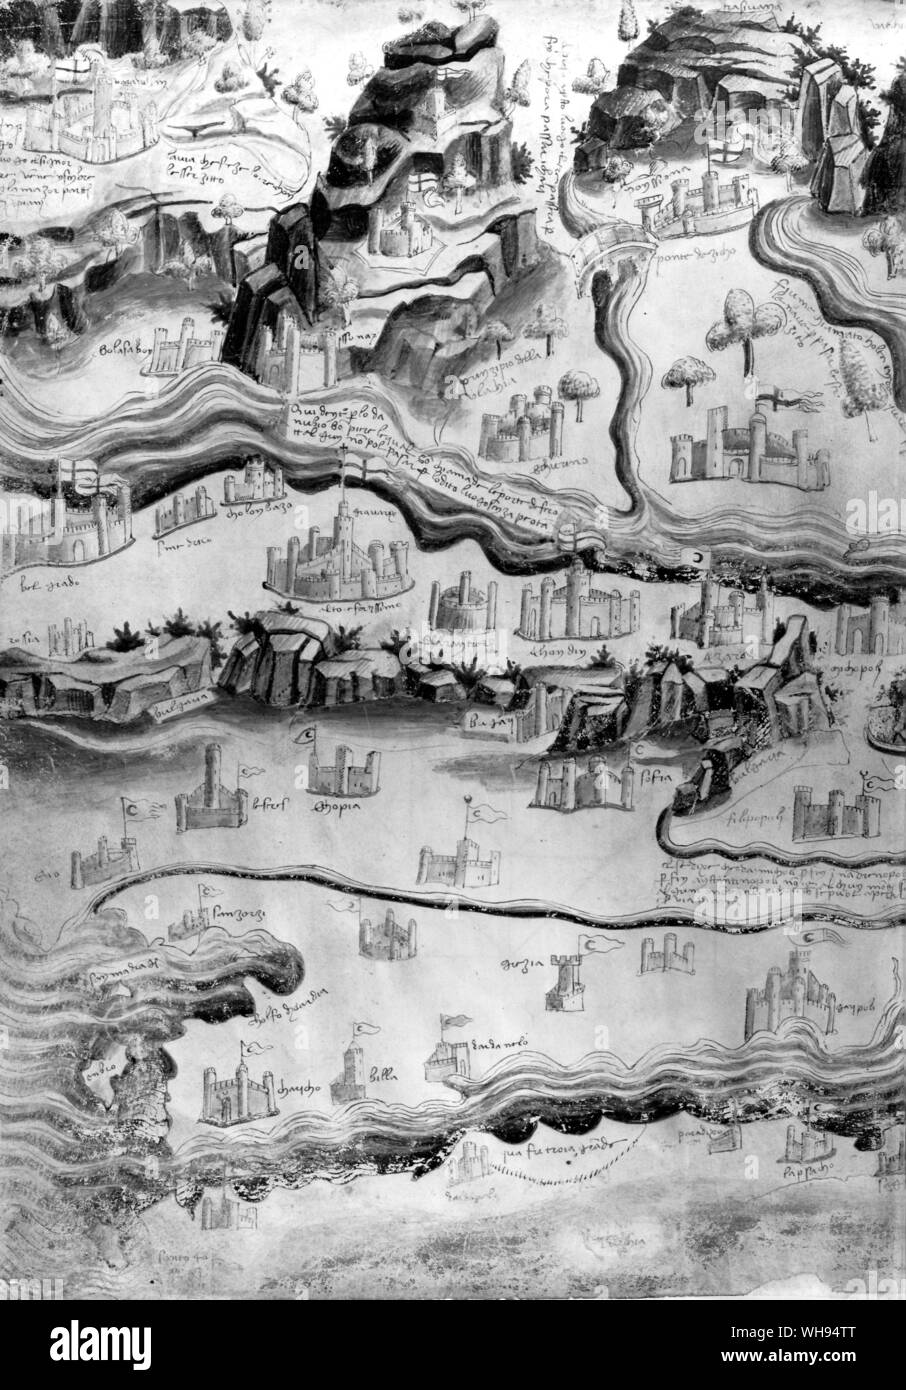 Türkische Fahnen wehen auf die Festungen, südlich von Belgrad (Mitte, links). Die militärischen Ingenieurs Taccola zeichnete diese Karte von der Situation in Osteuropa über 1455. Stockfoto